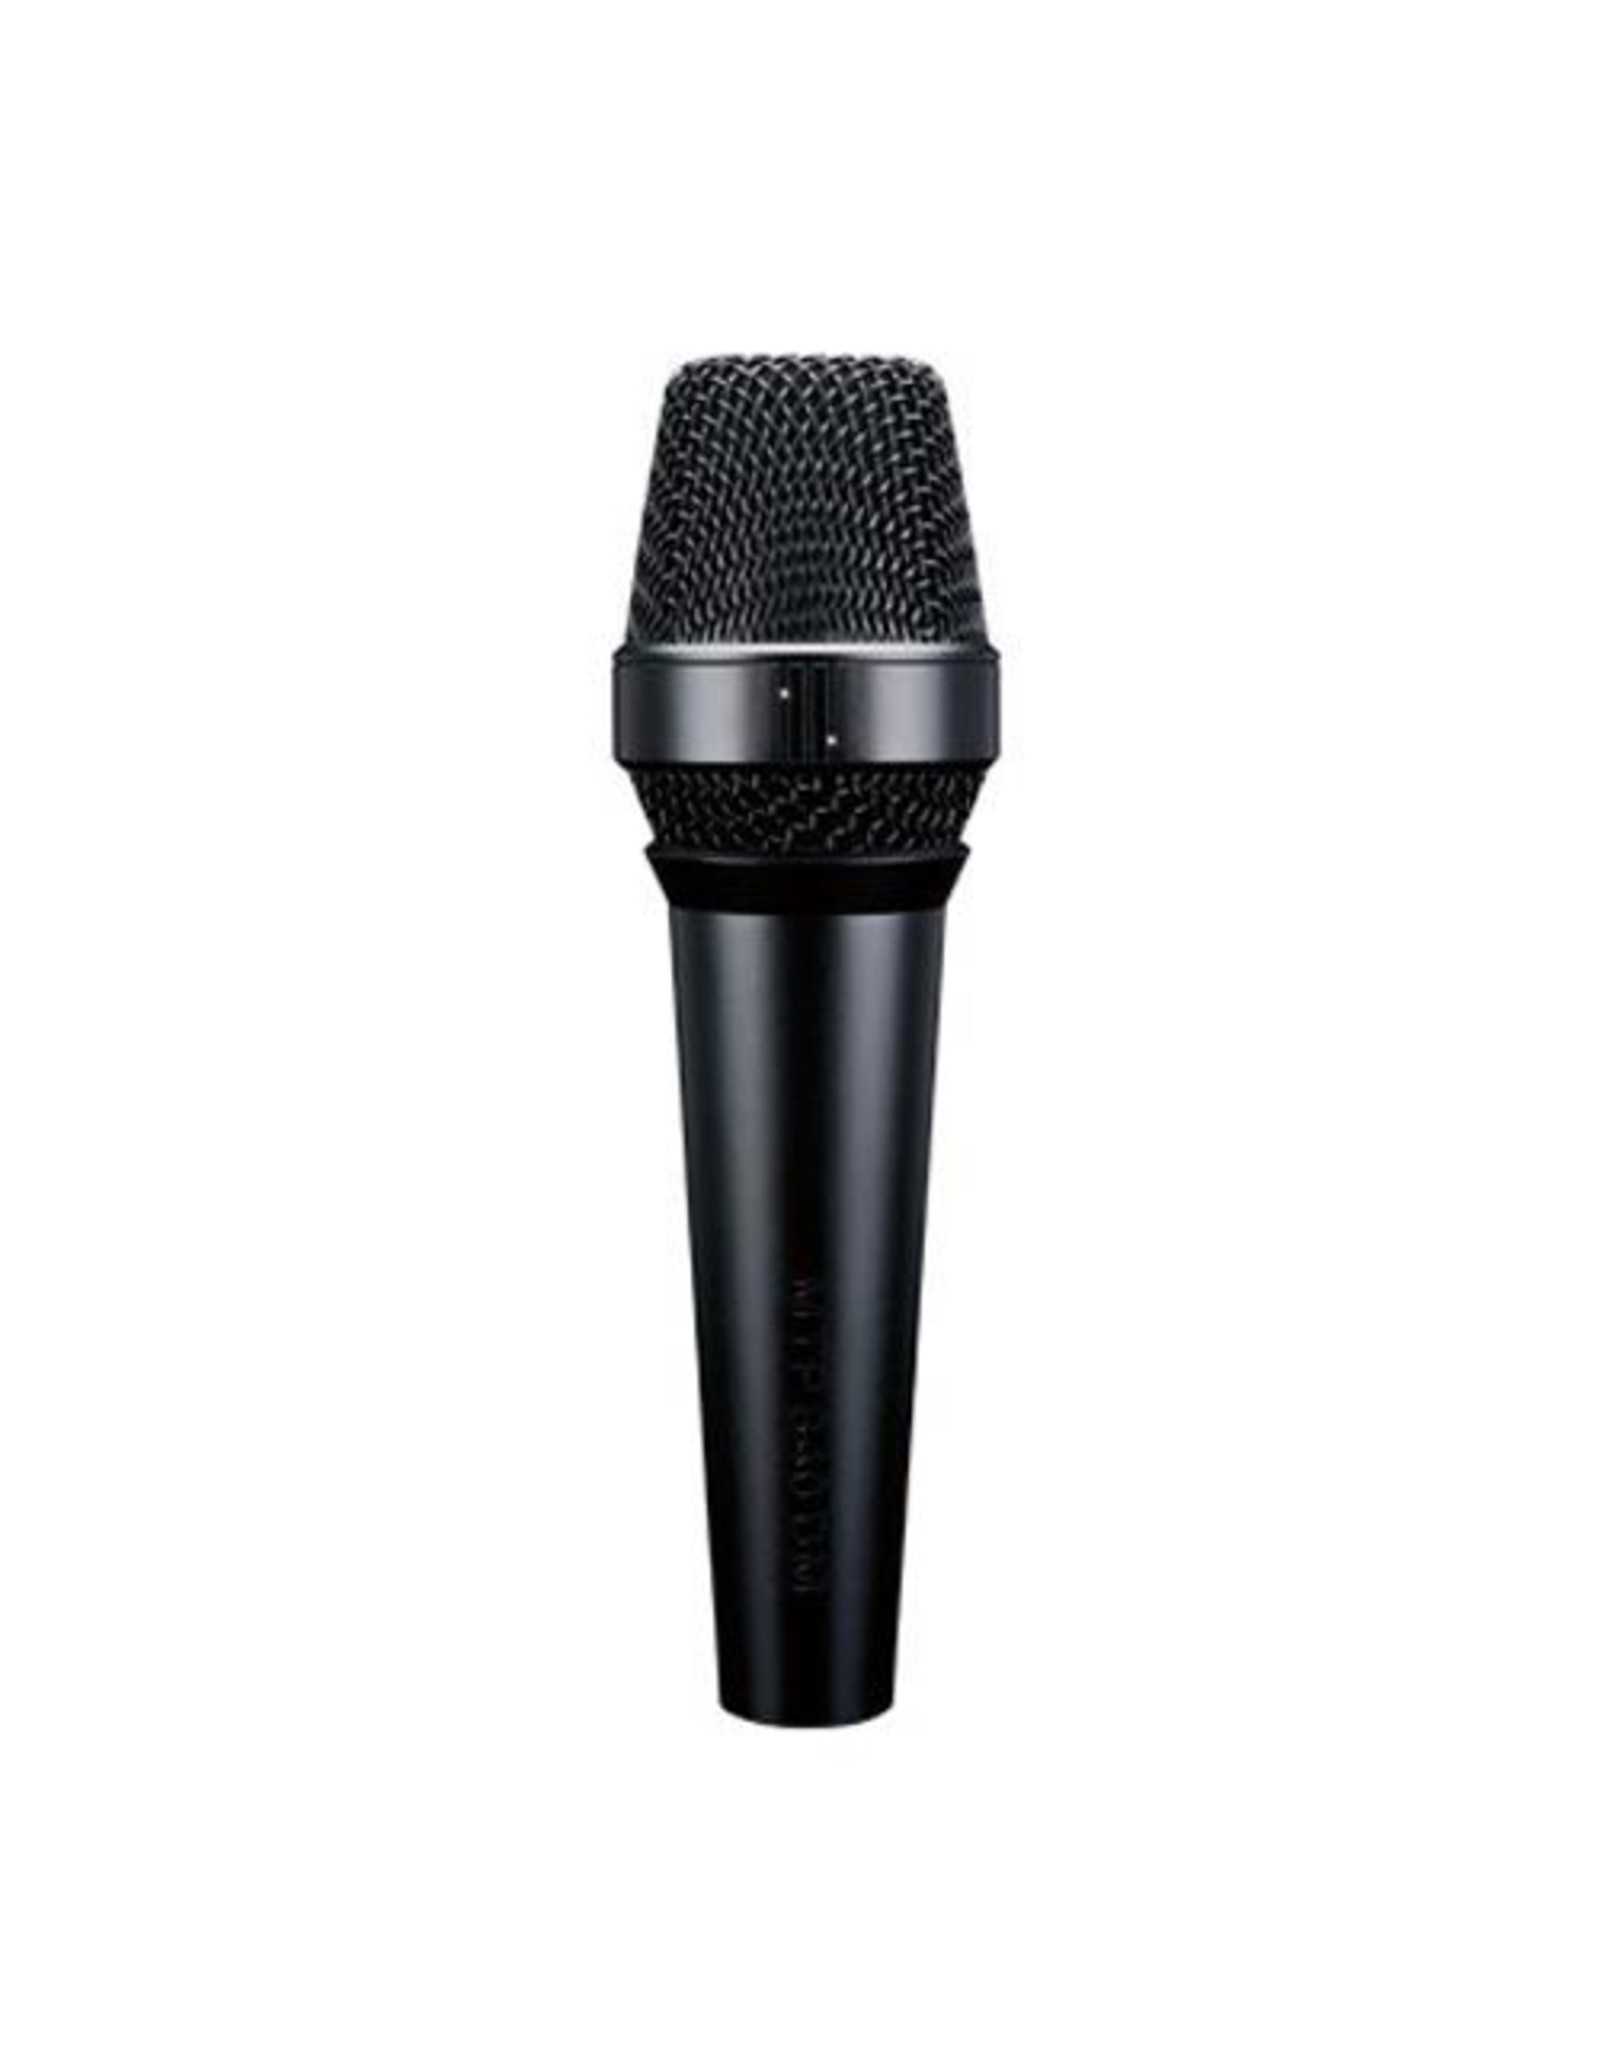 Lewitt MTP840DM microphone